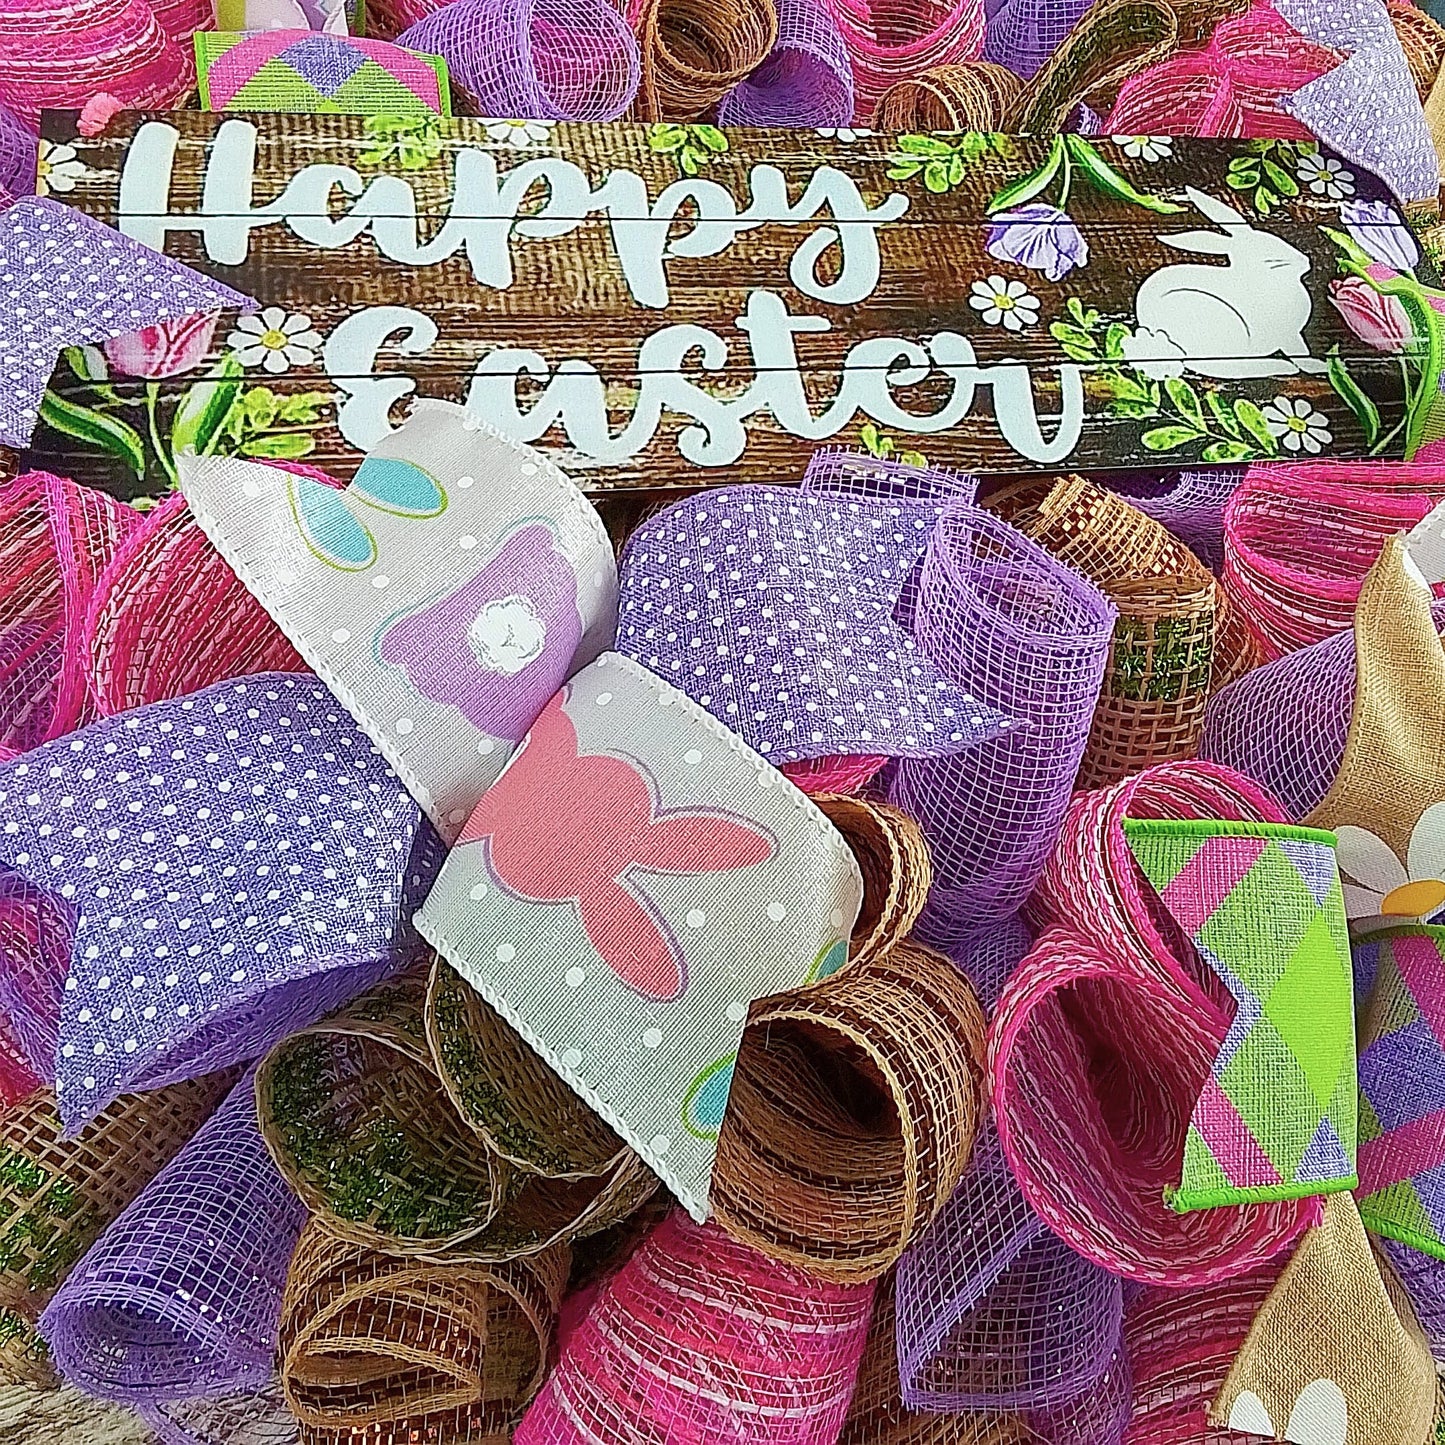 Happy Easter Wreath | Welcome Door Wreaths Decorations | Burlap Pink Purple